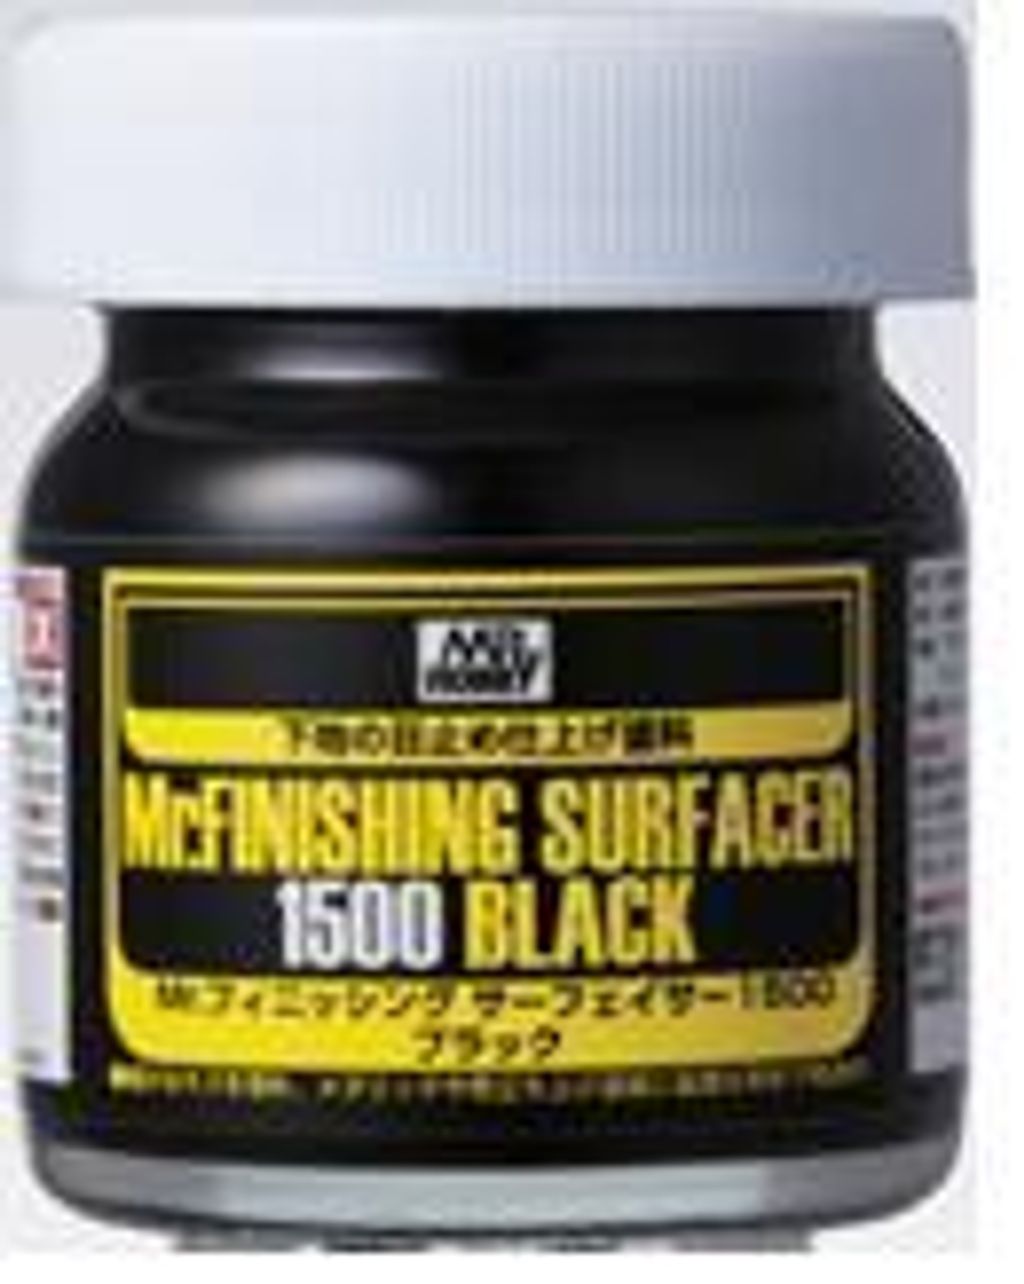 MR FINISHING SURFACER 1500 BLACK.jpg